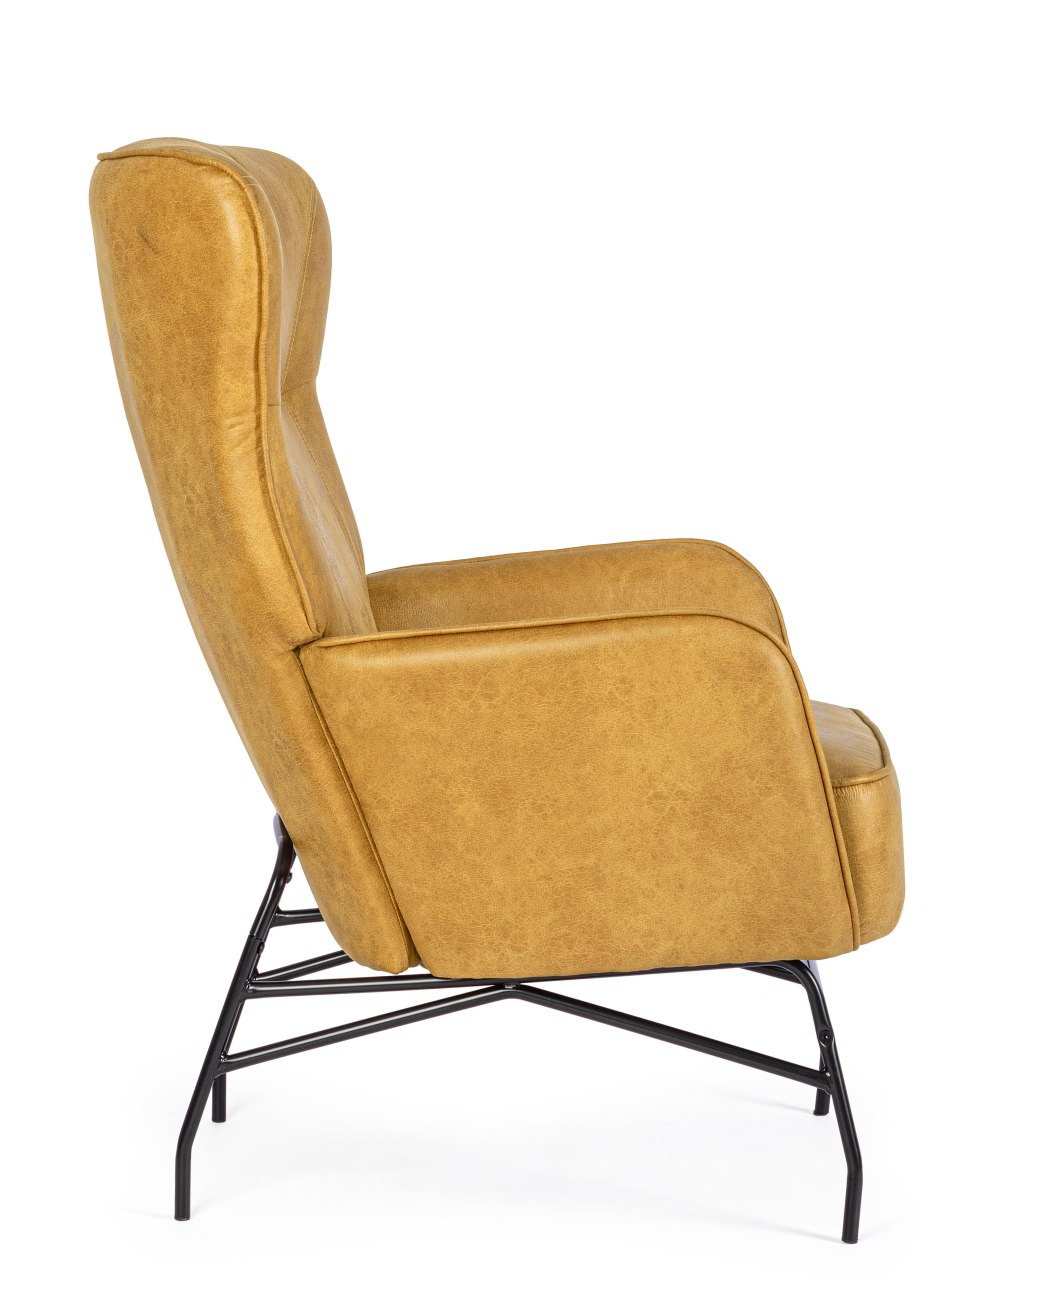 Der Sessel Nasira überzeugt mit seinem modernen Stil. Gefertigt wurde er aus Kunstleder, welches einen Senf Farbton besitzt. Das Gestell ist aus Metall und hat eine schwarze Farbe. Der Sessel besitzt eine Sitzhöhe von 50 cm.